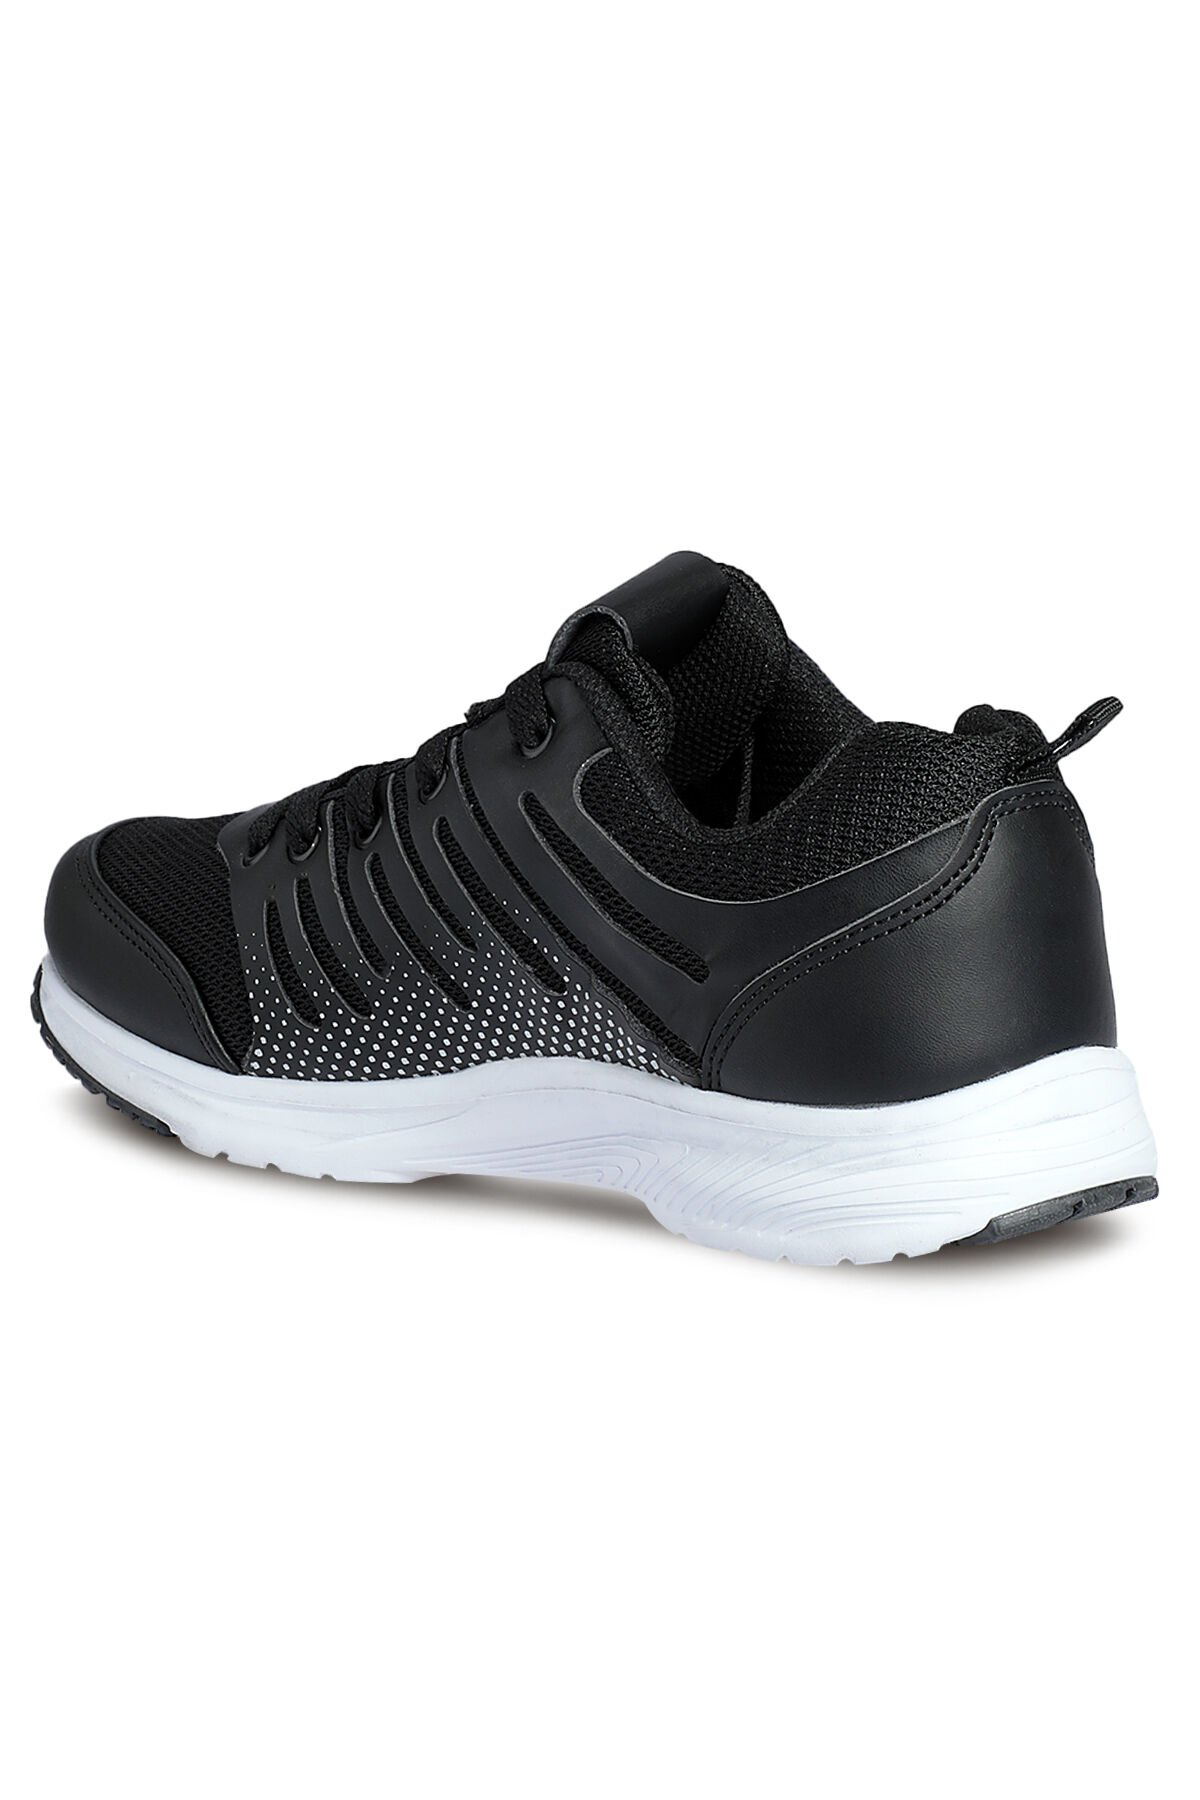 FONDA Sneaker Kadın Ayakkabı Siyah - Thumbnail